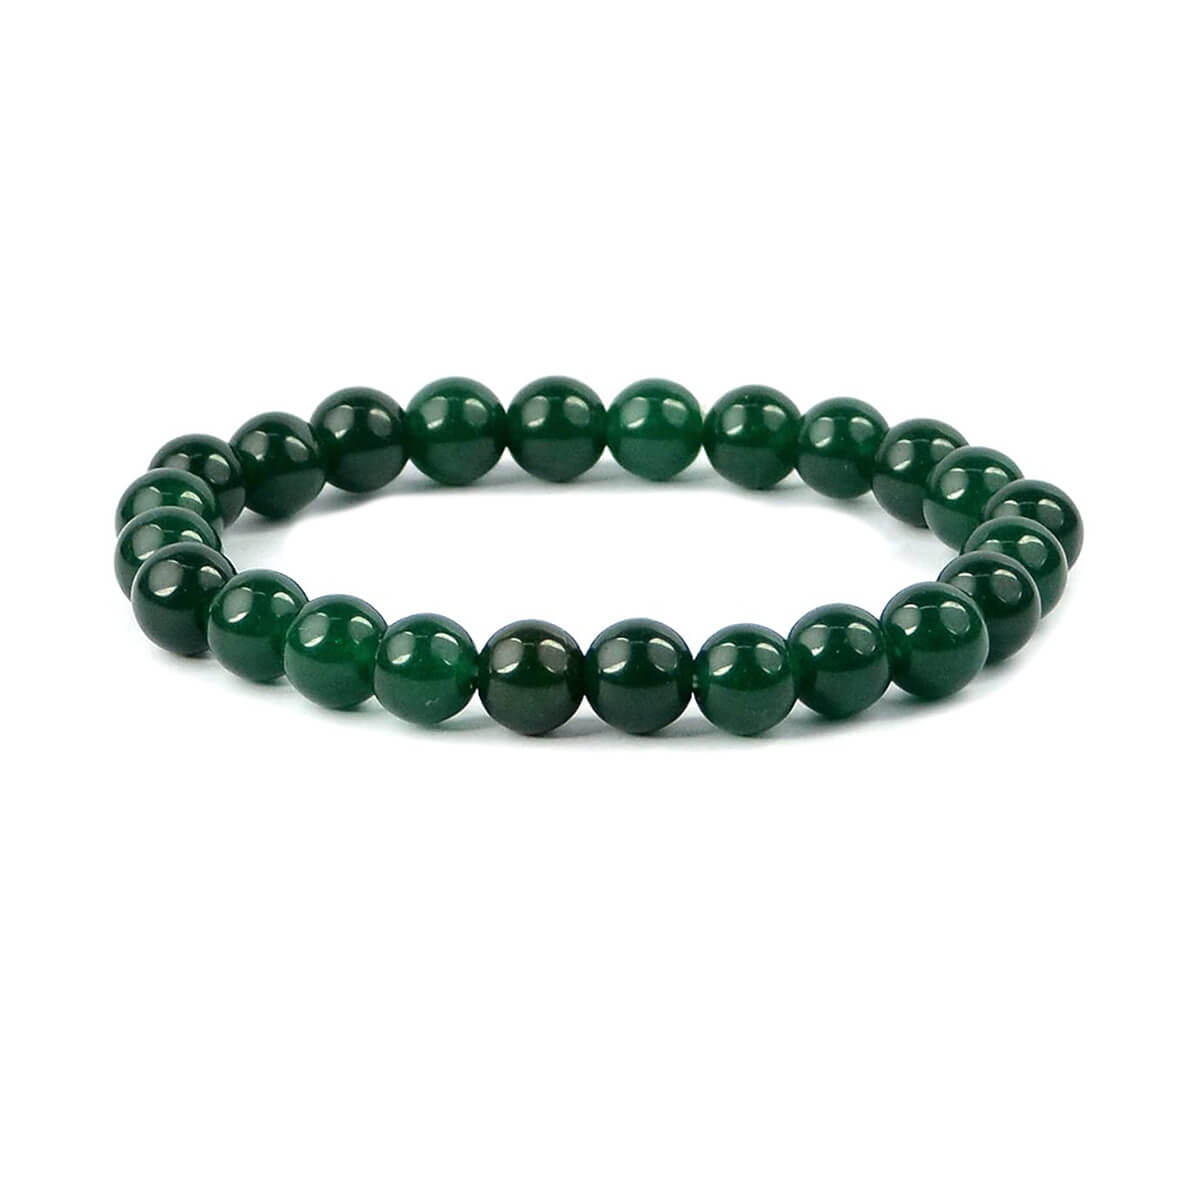 Green Aventurine Crystal Bracelet for Reiki Healing 8 MM